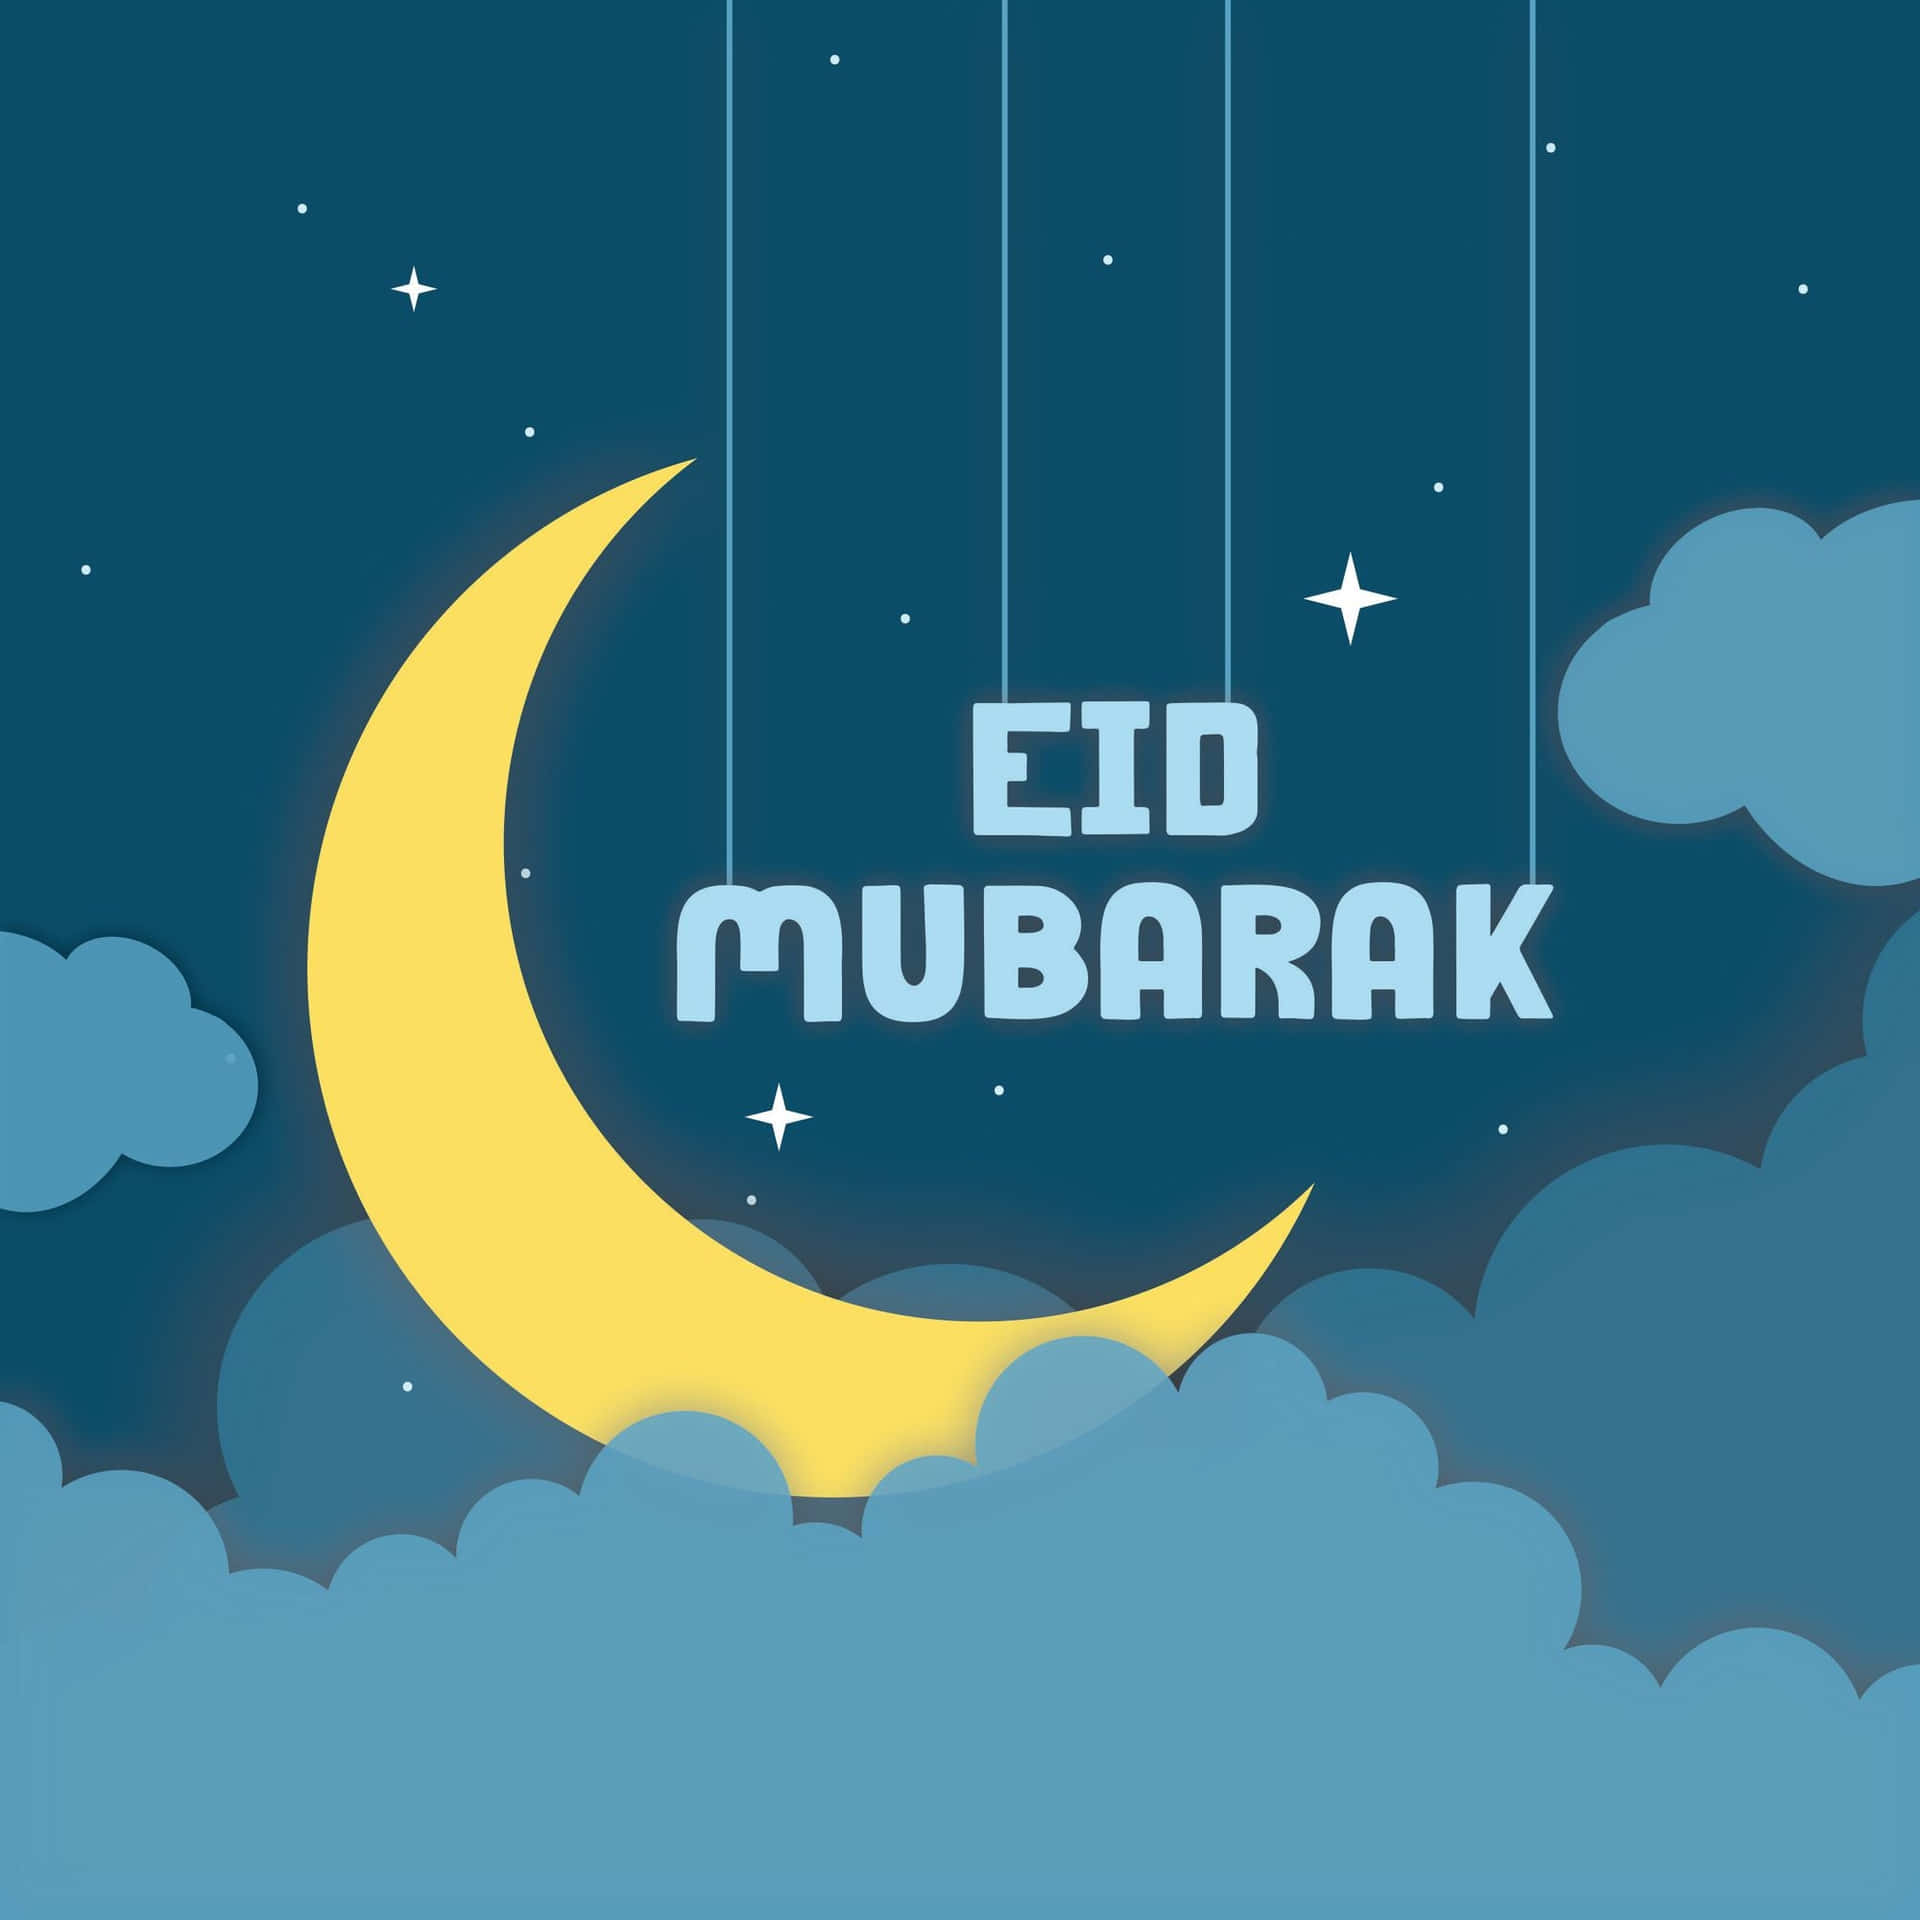 Ønskerdig En Glædelig Eid Mubarak!